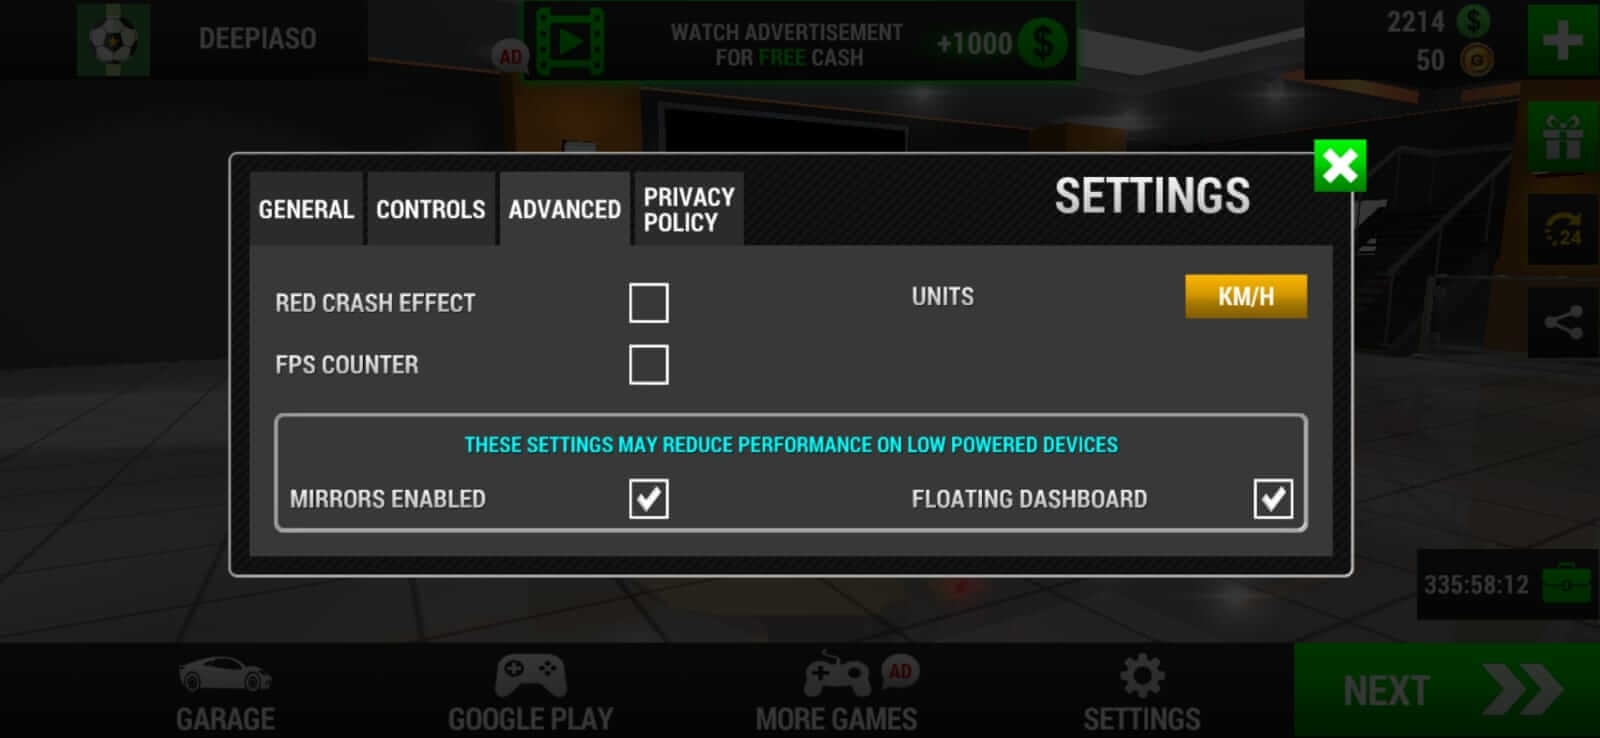 Schermafbeelding Racing Limits